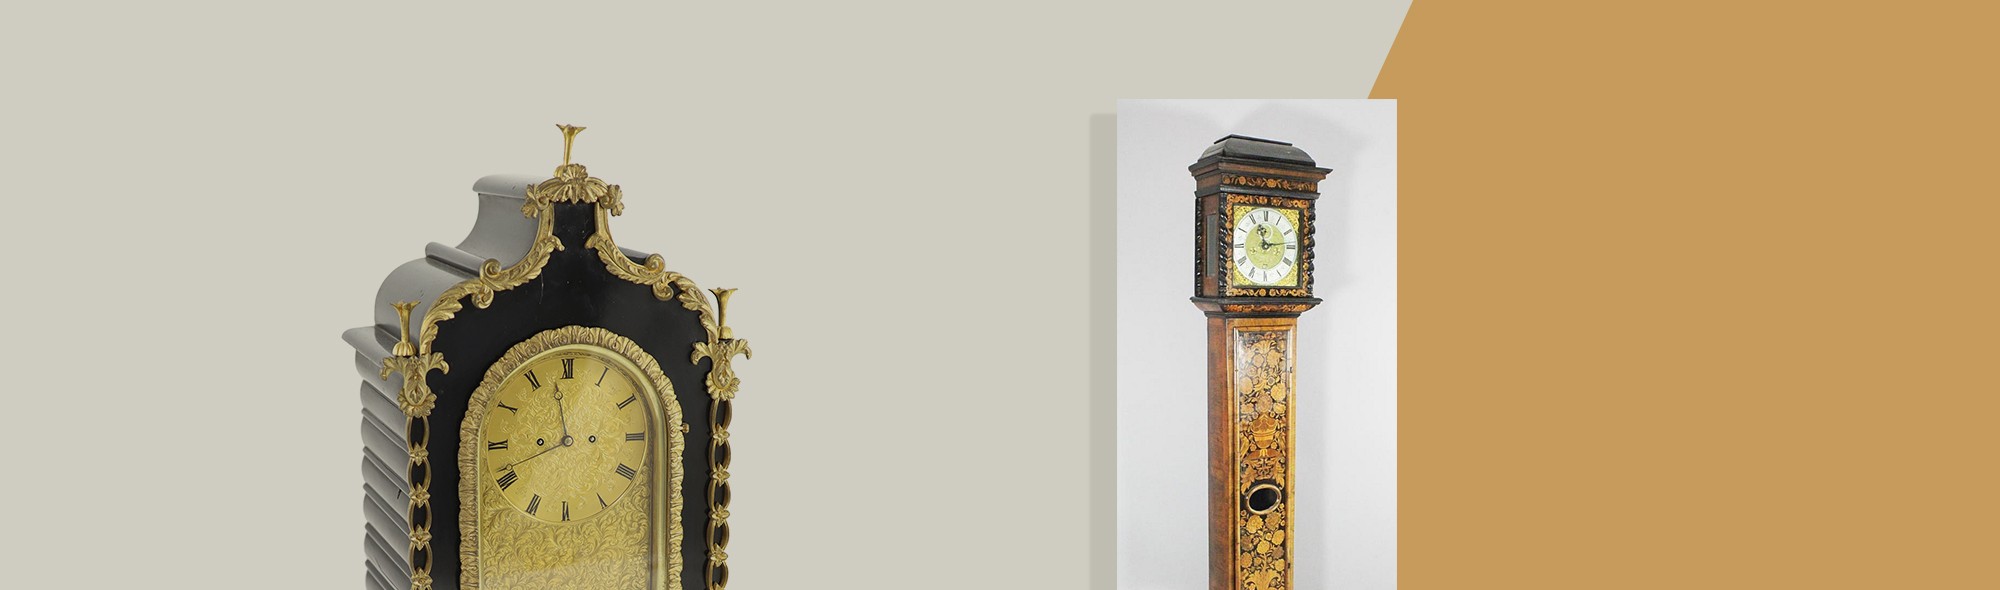 gilt edge and tall clock